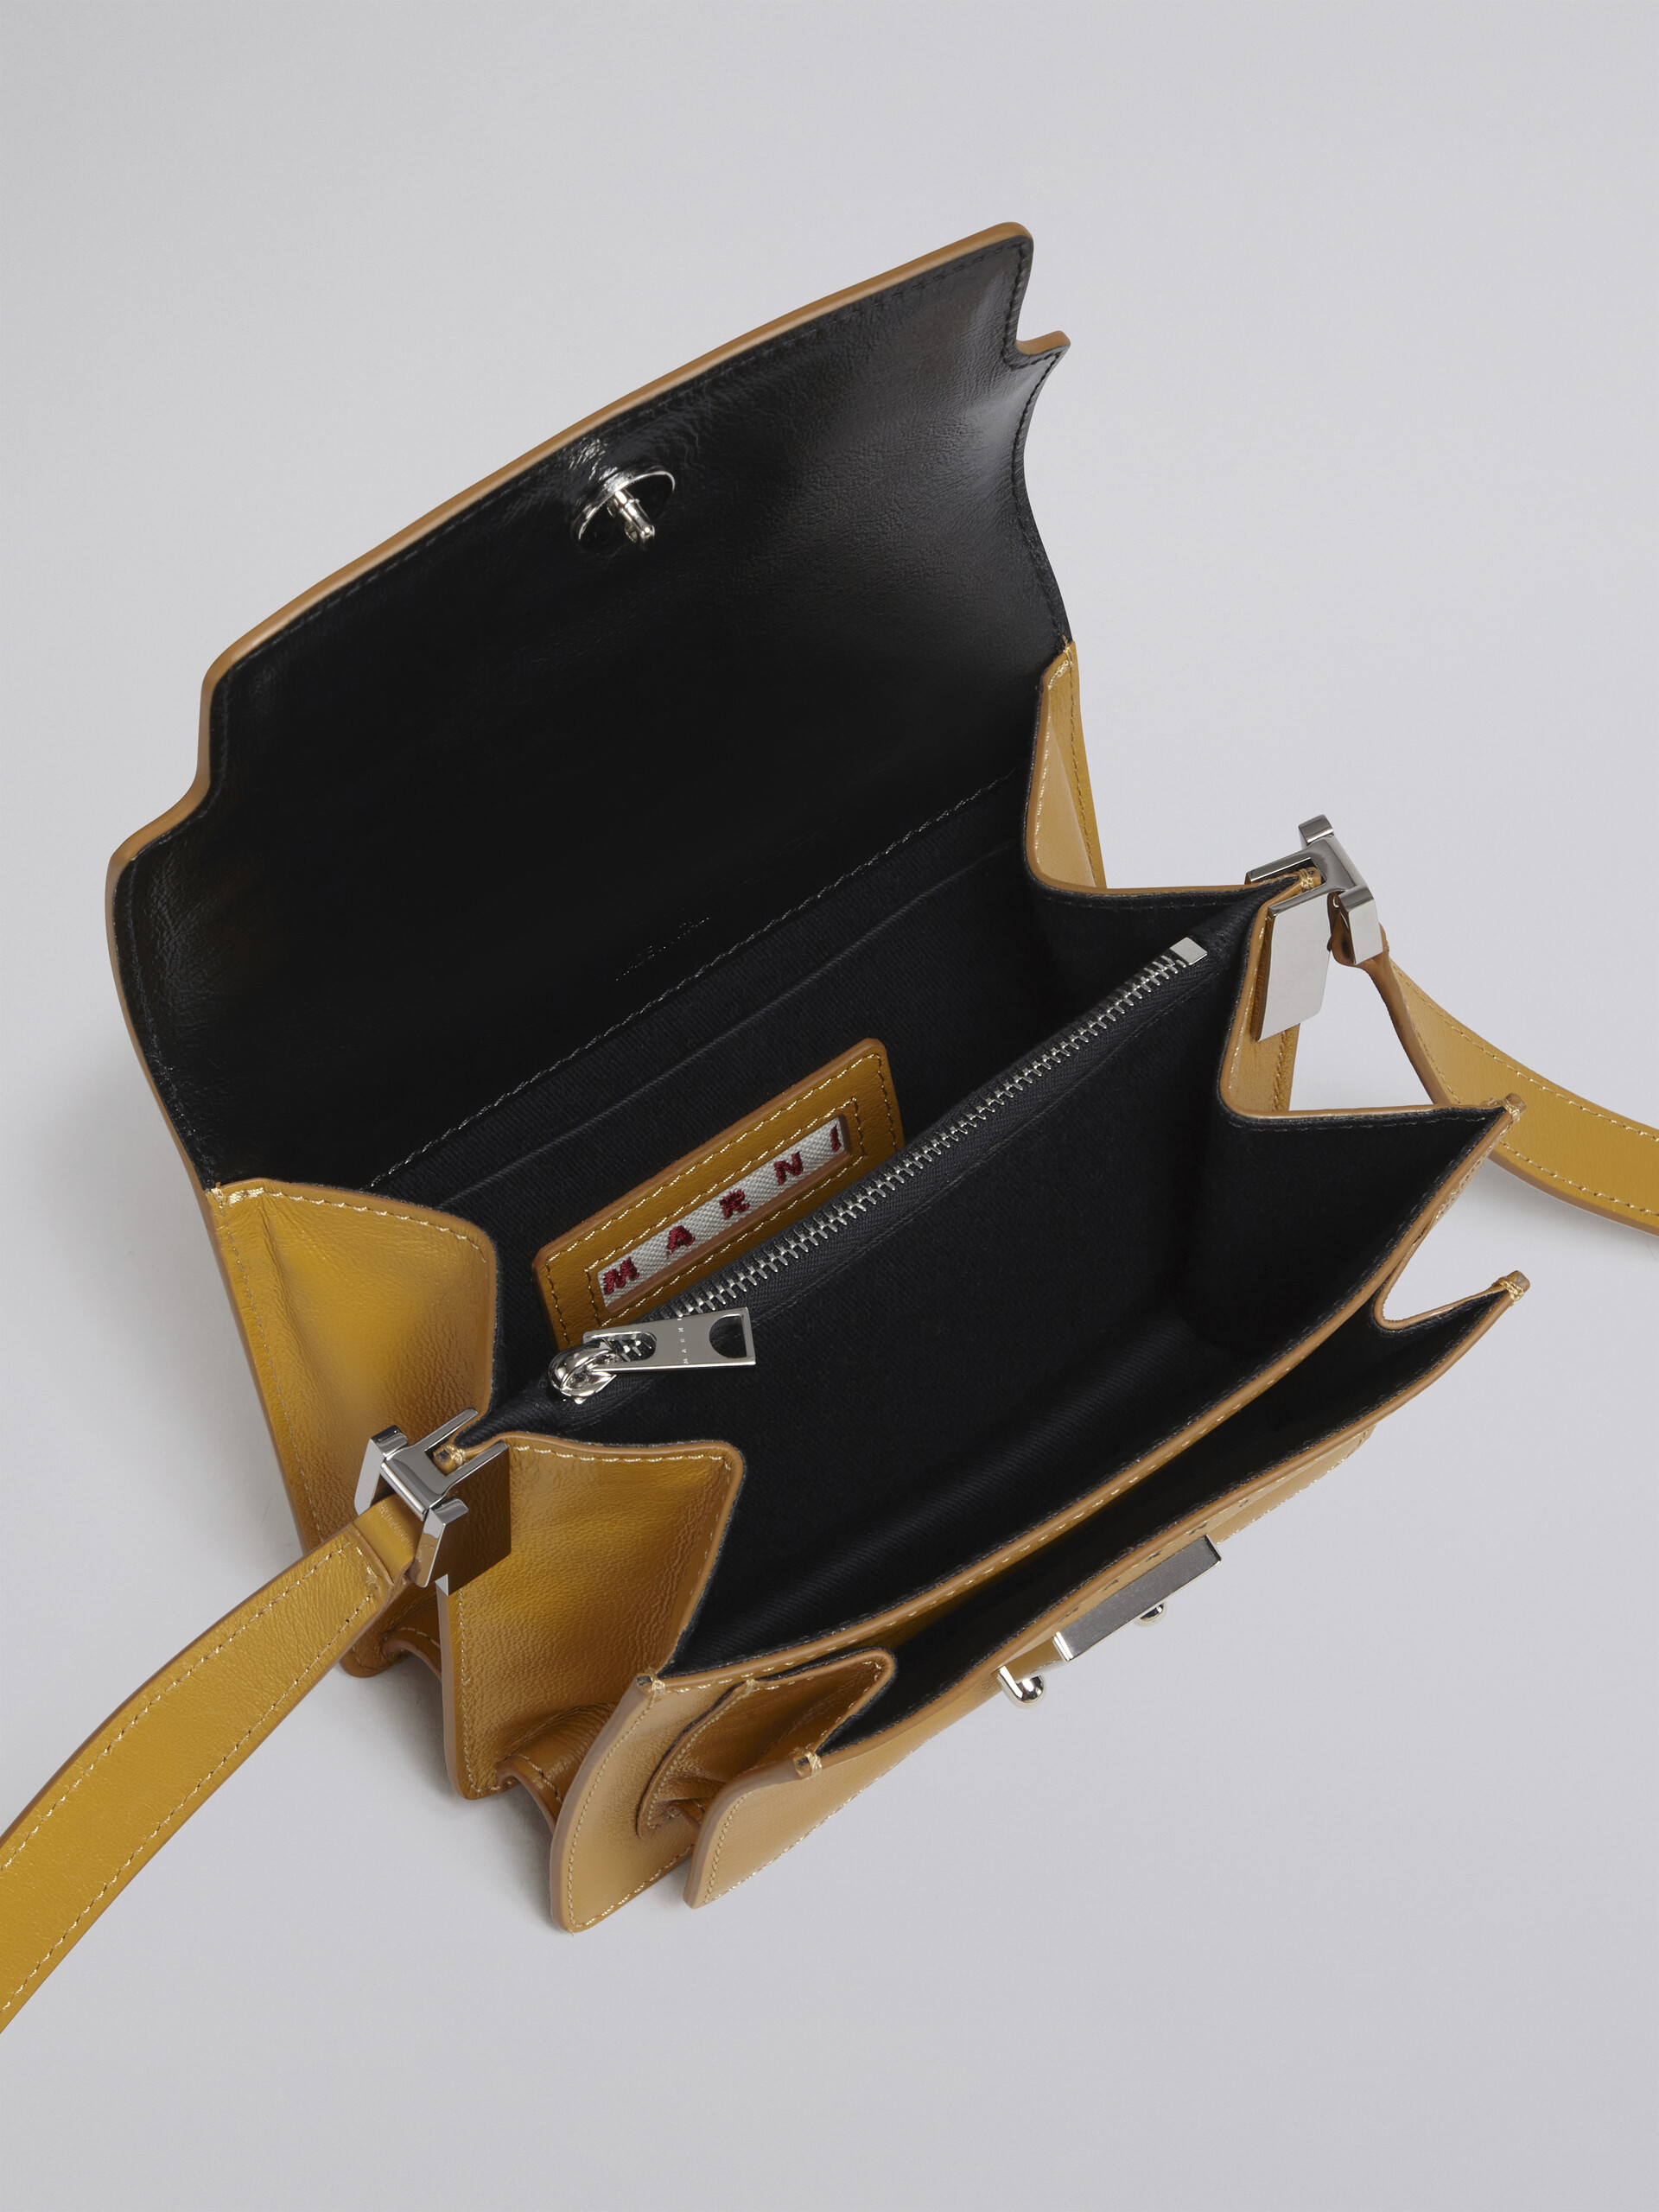 TRUNK SOFT bag mini in pelle gialla e nera - Borse a spalla - Image 4